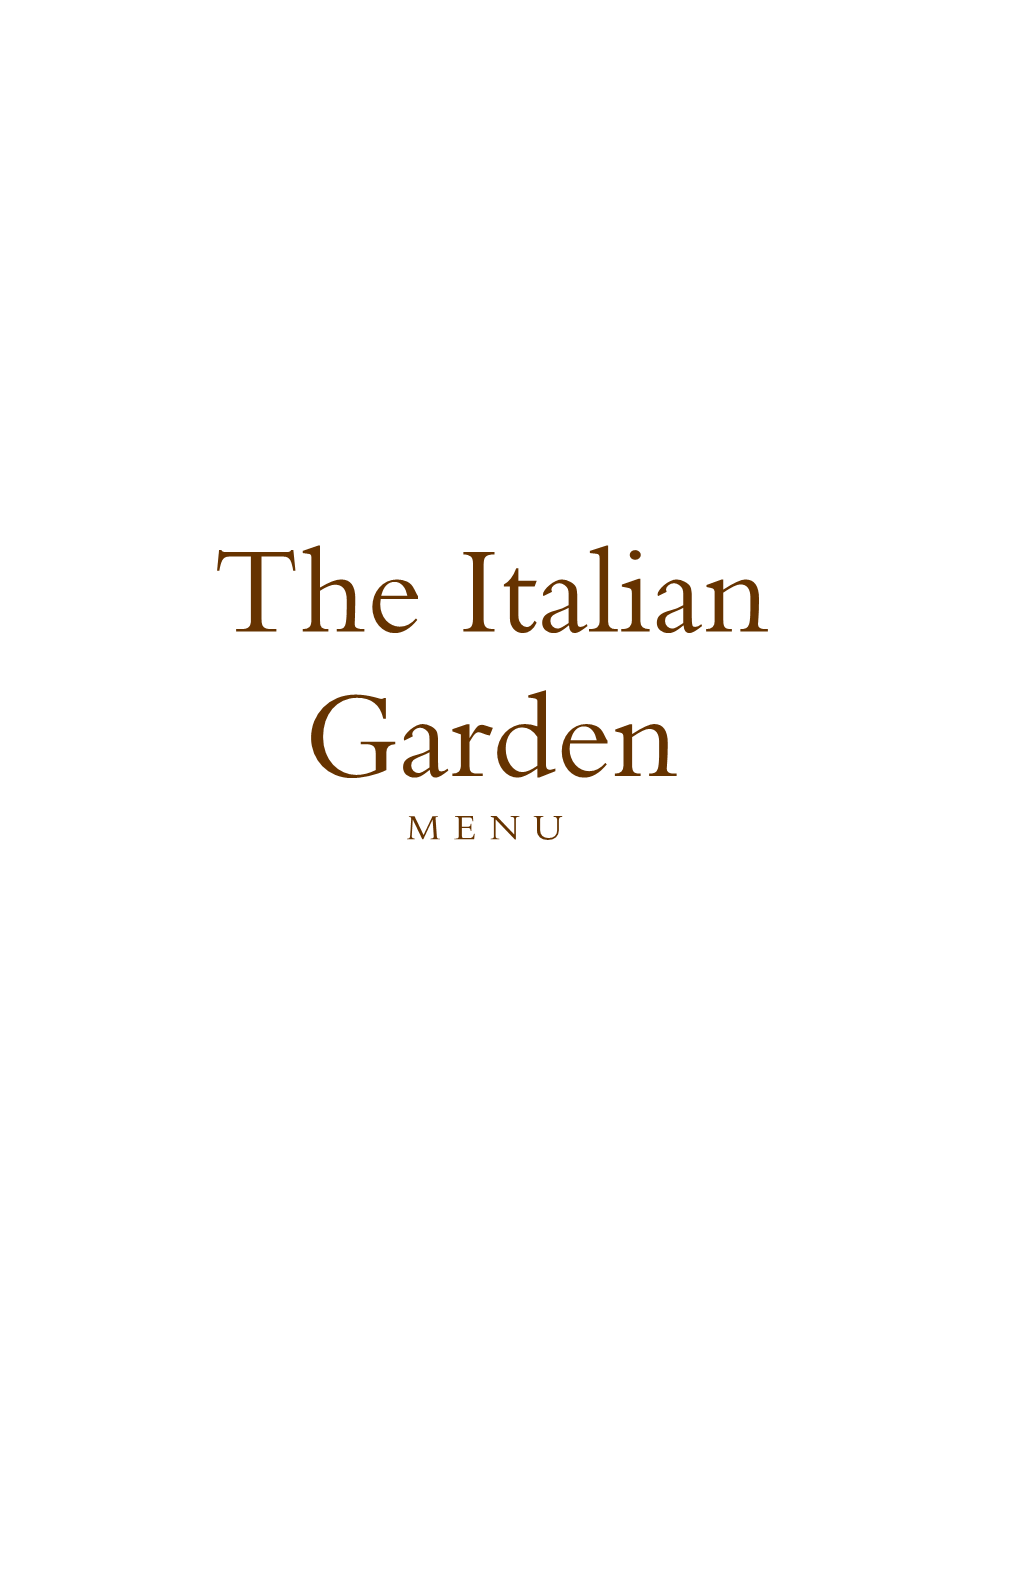 The Italian Garden MEN U